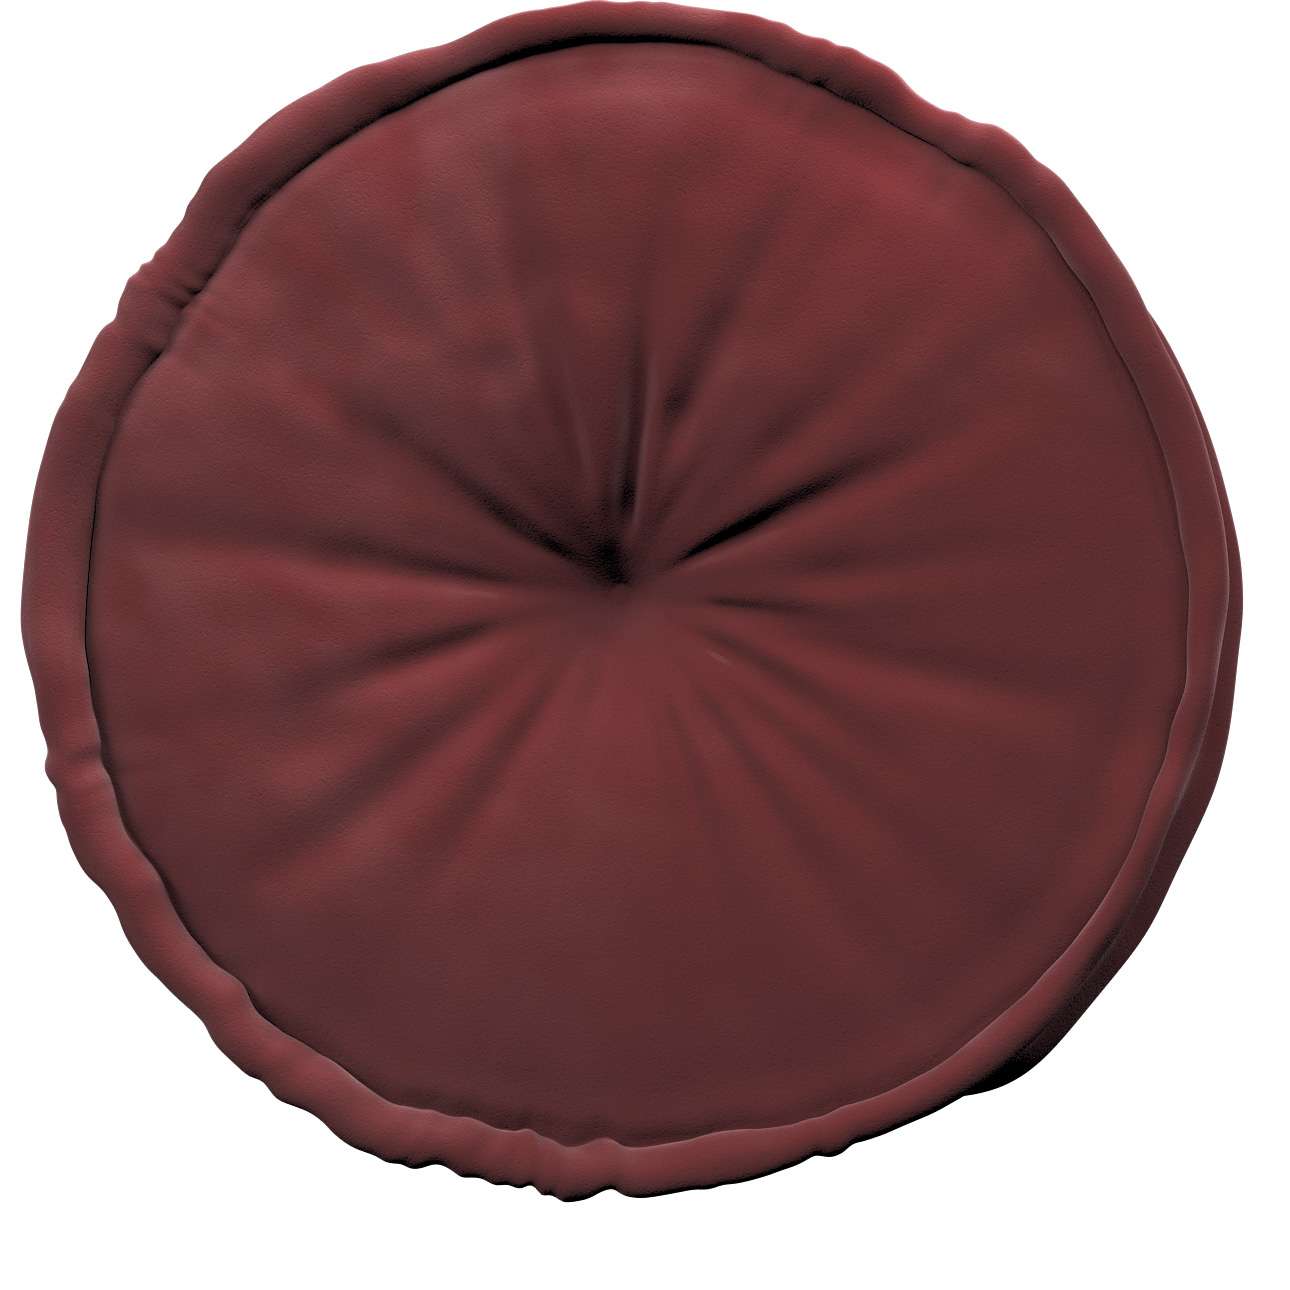 French pouf 50x13cm - Posh Velvet - burgundy